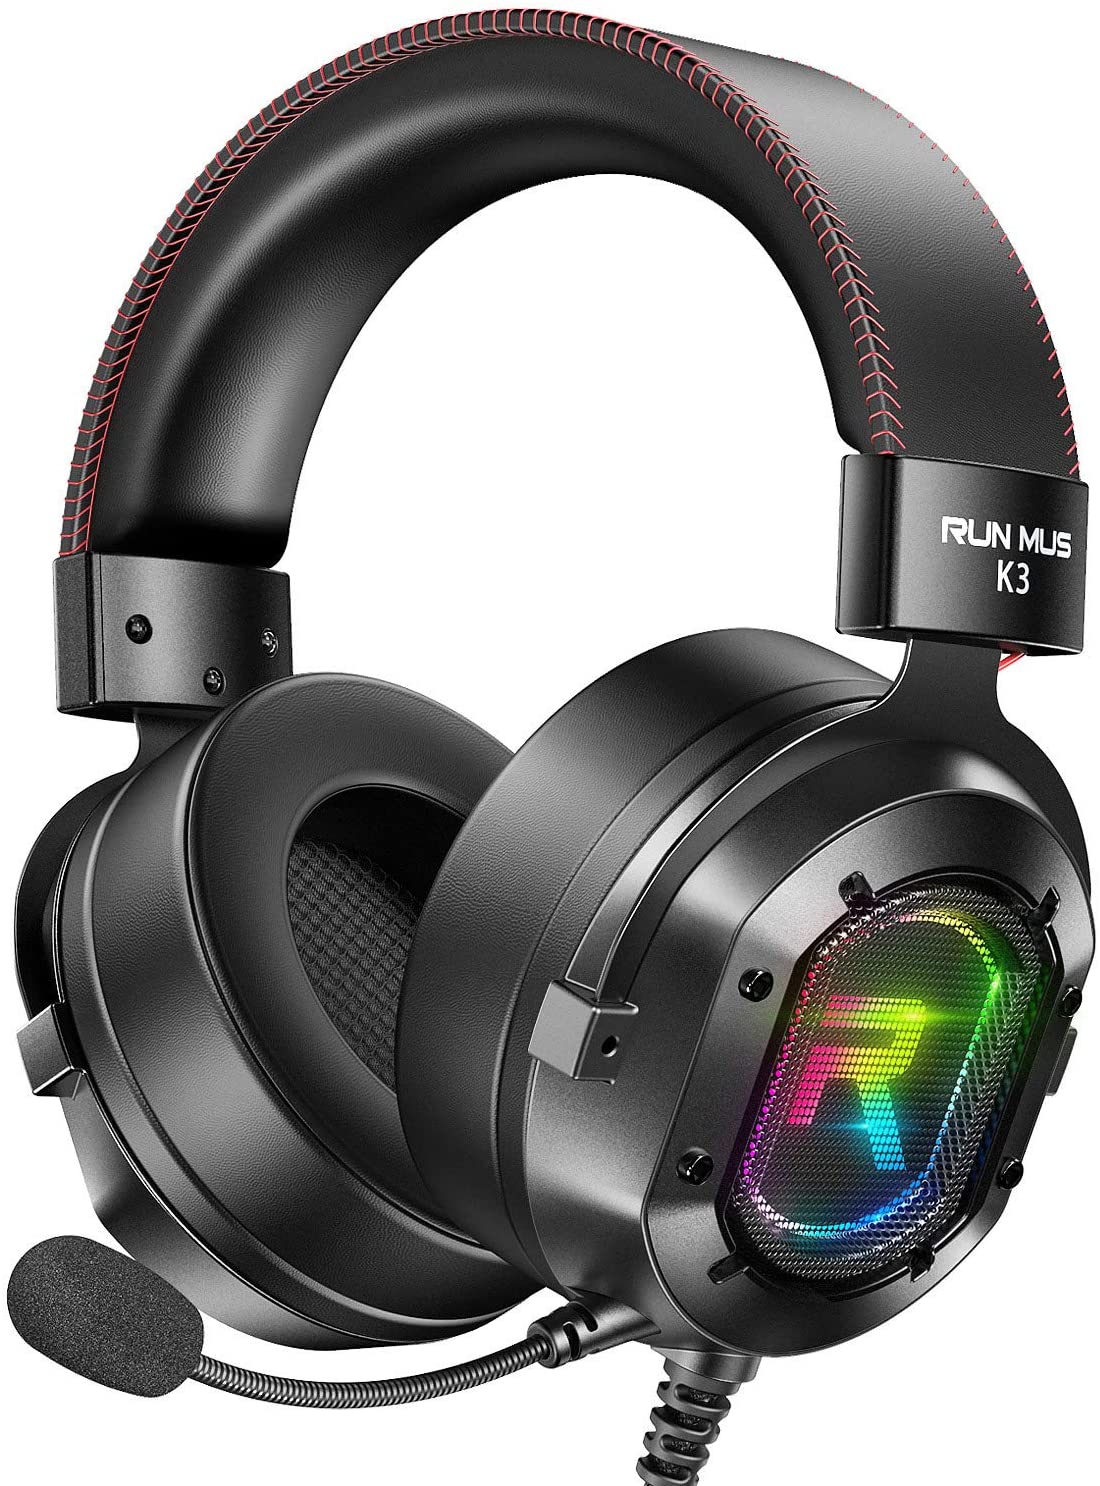 RUNMUS K3 RGB Gaming Headset